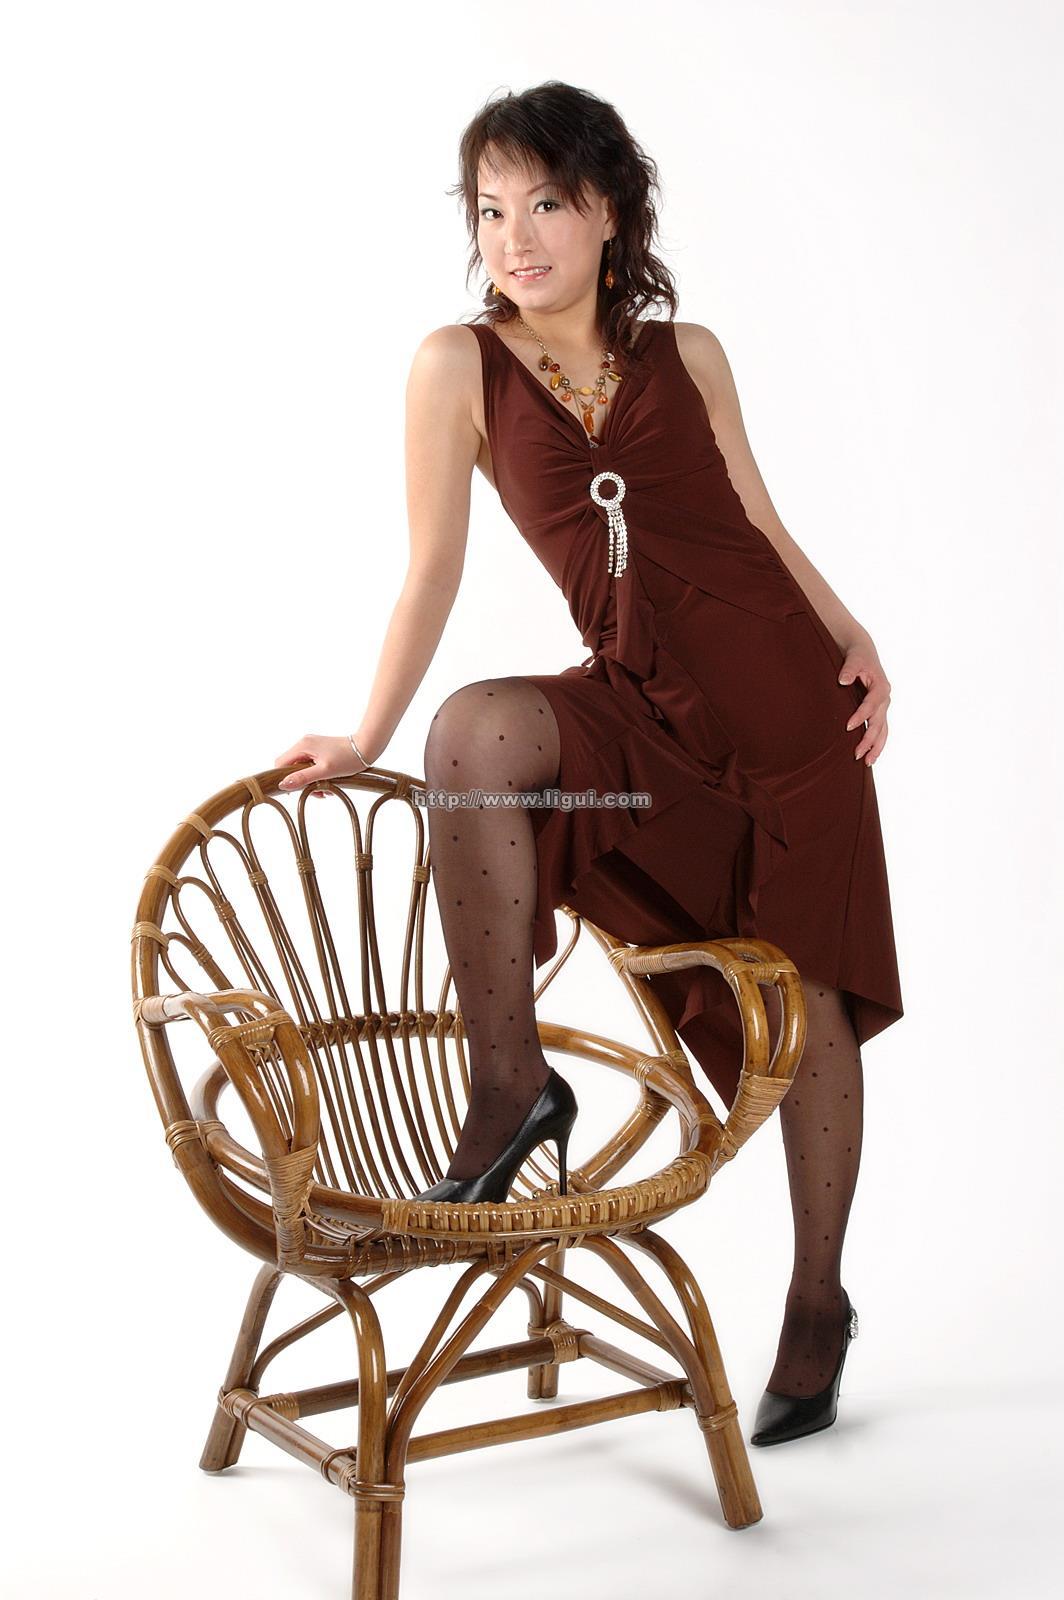 [Ligui丽柜会所]2006-05-13 英子 棕色连衣裙加到了黑色丝袜美腿玉足性感私房写真集,